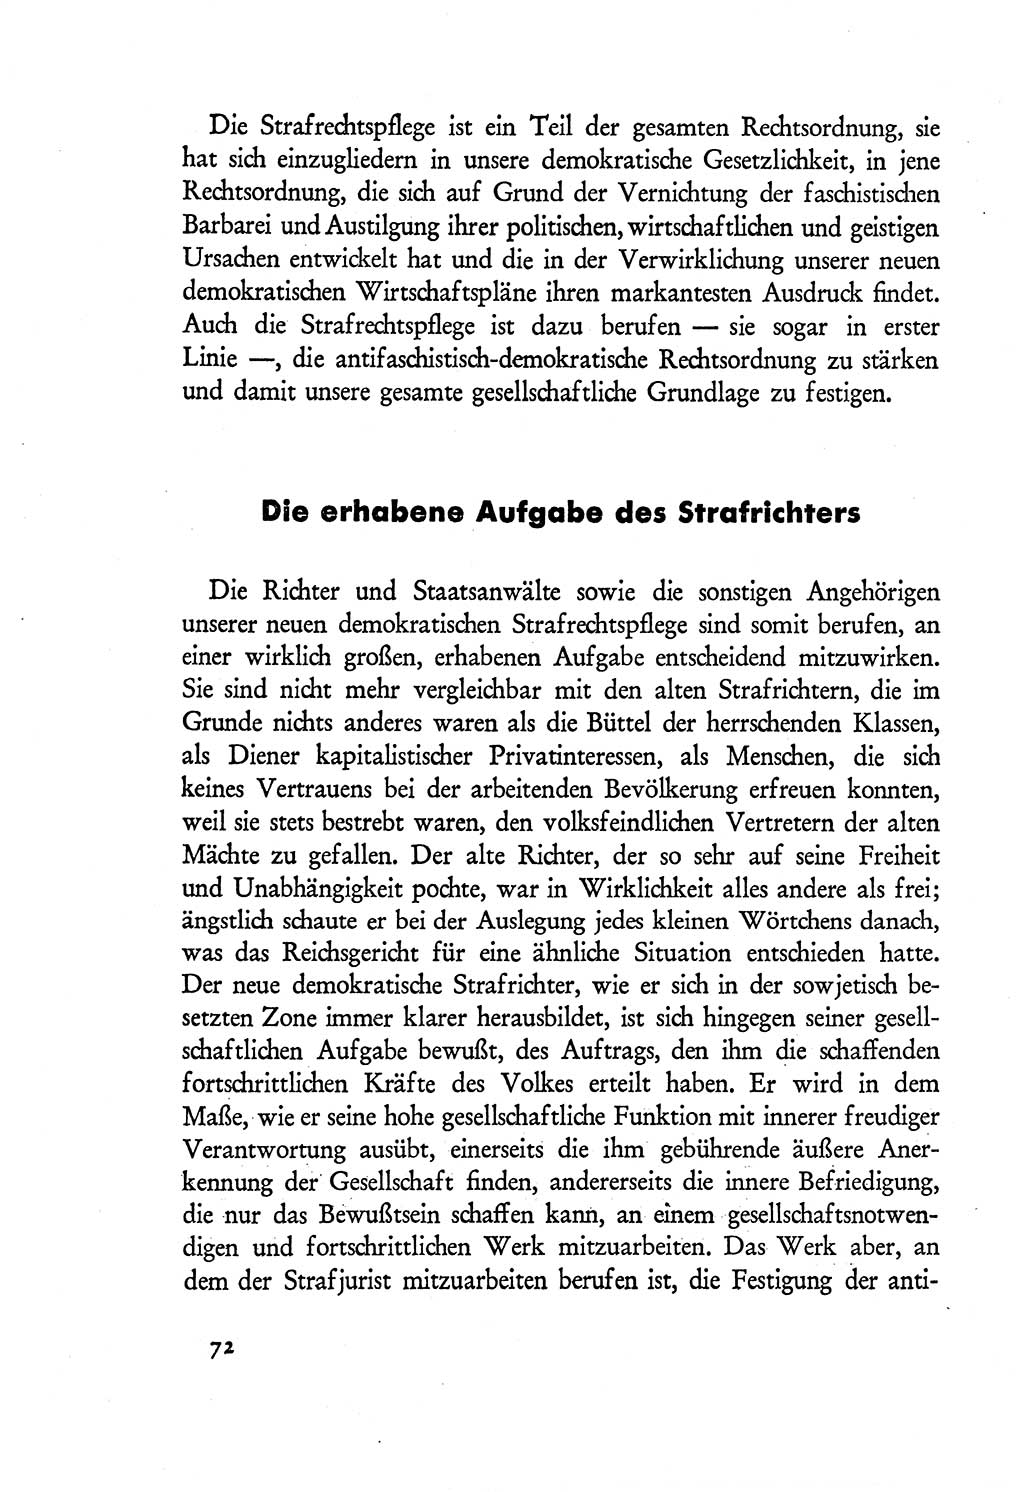 Probleme eines demokratischen Strafrechts [Sowjetische Besatzungszone (SBZ) Deutschlands] 1949, Seite 72 (Probl. Strafr. SBZ Dtl. 1949, S. 72)